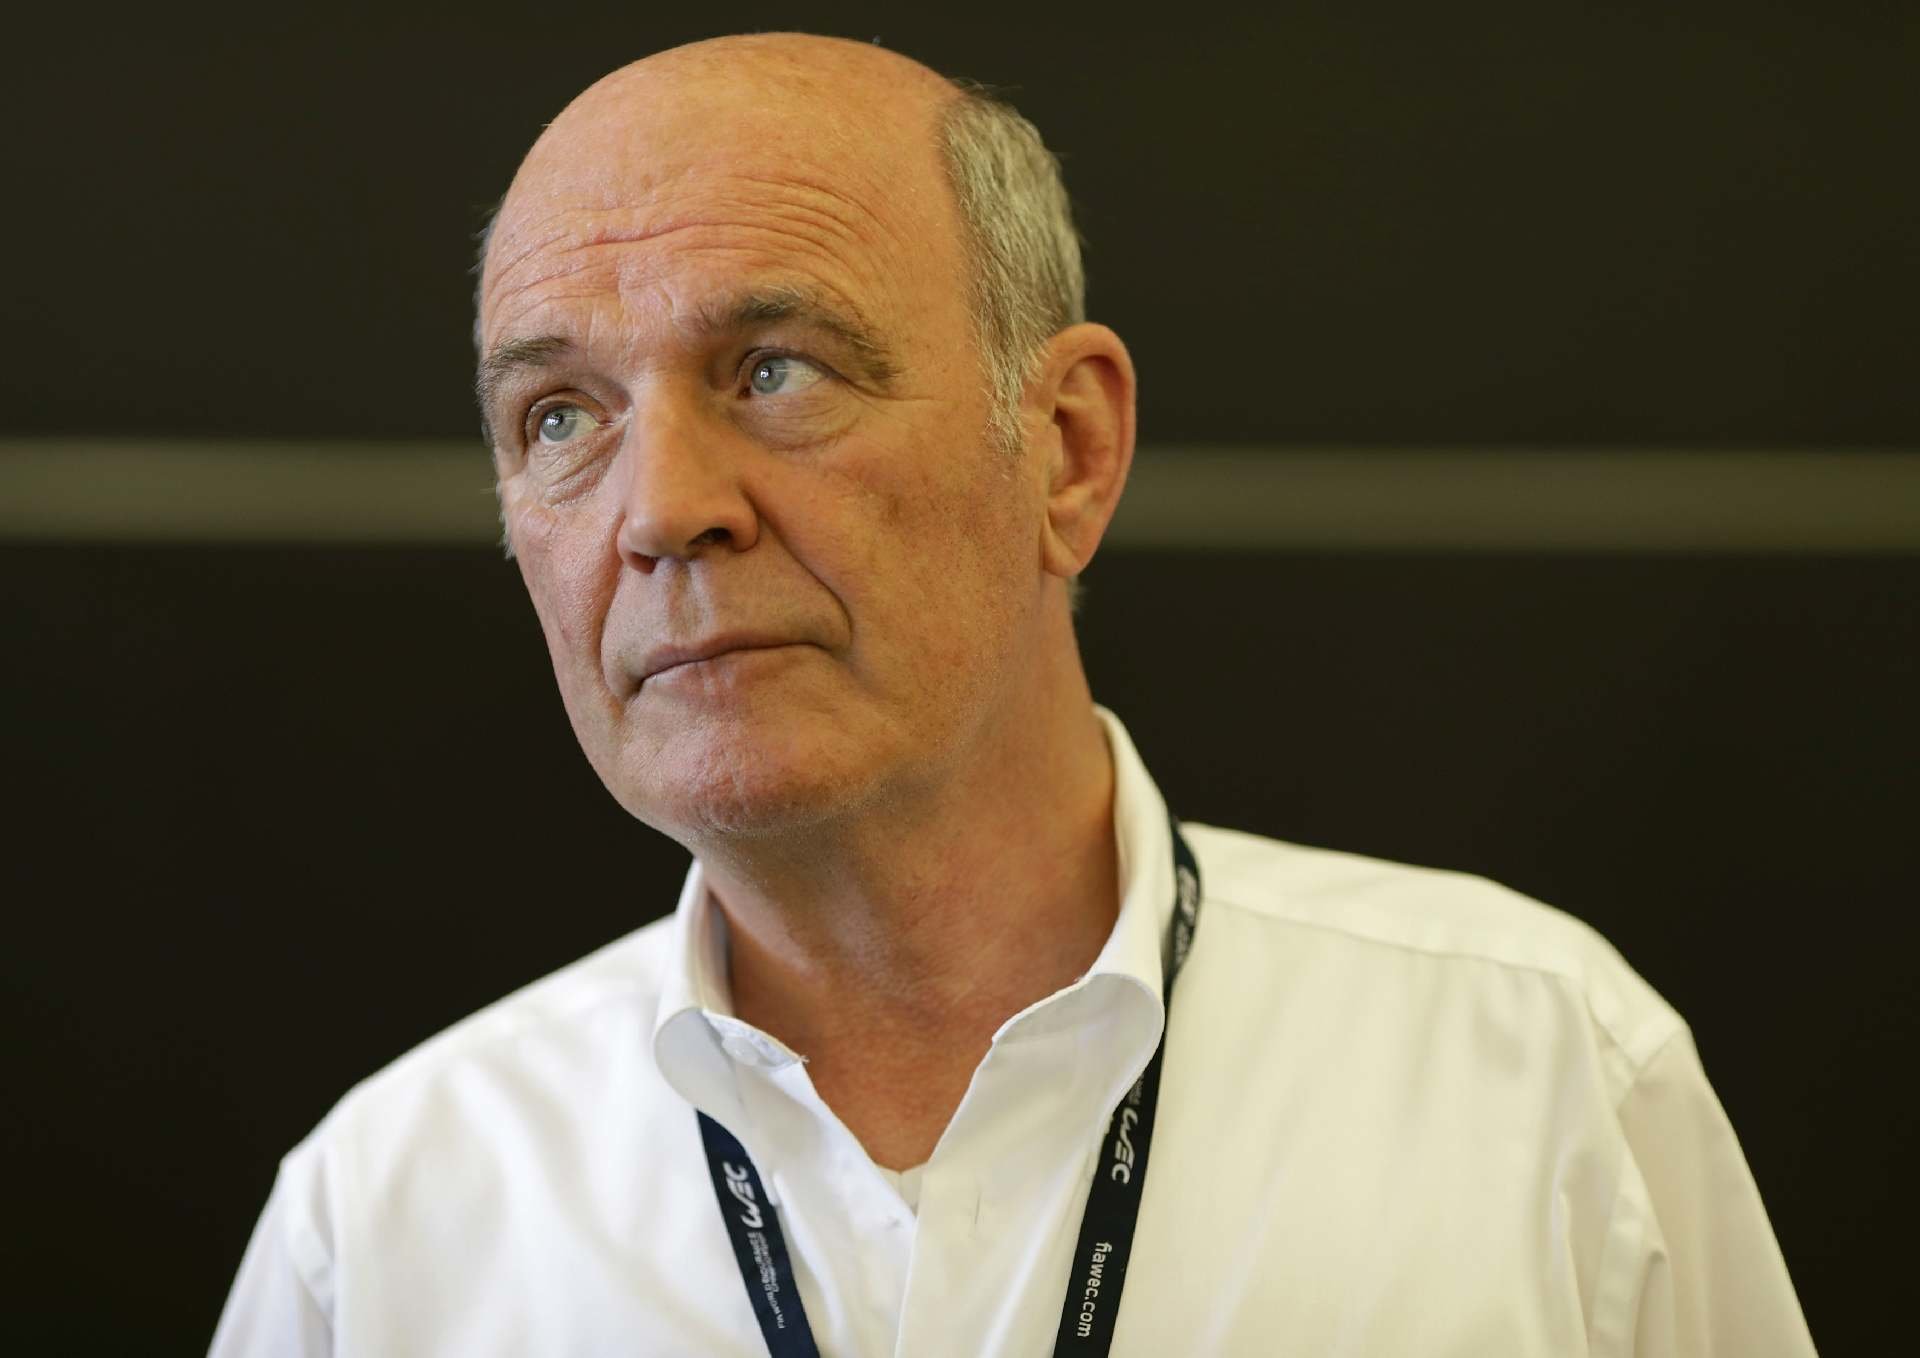 Odcházející šéf Audi Motorsport, Dr. Wolfgang Ullrich